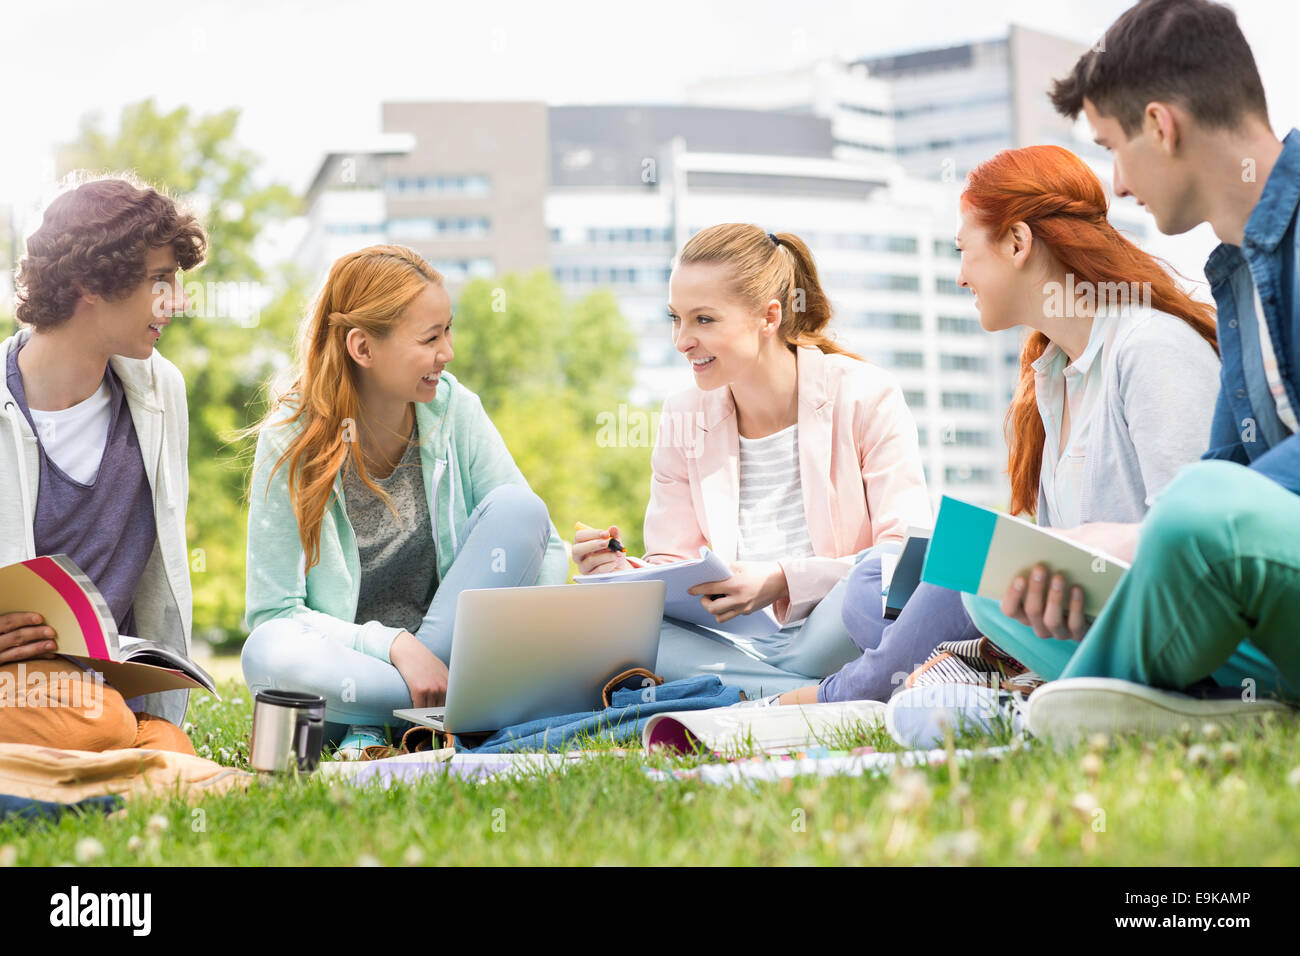 Les étudiants de l'Université d'étudier ensemble sur l'herbe Banque D'Images